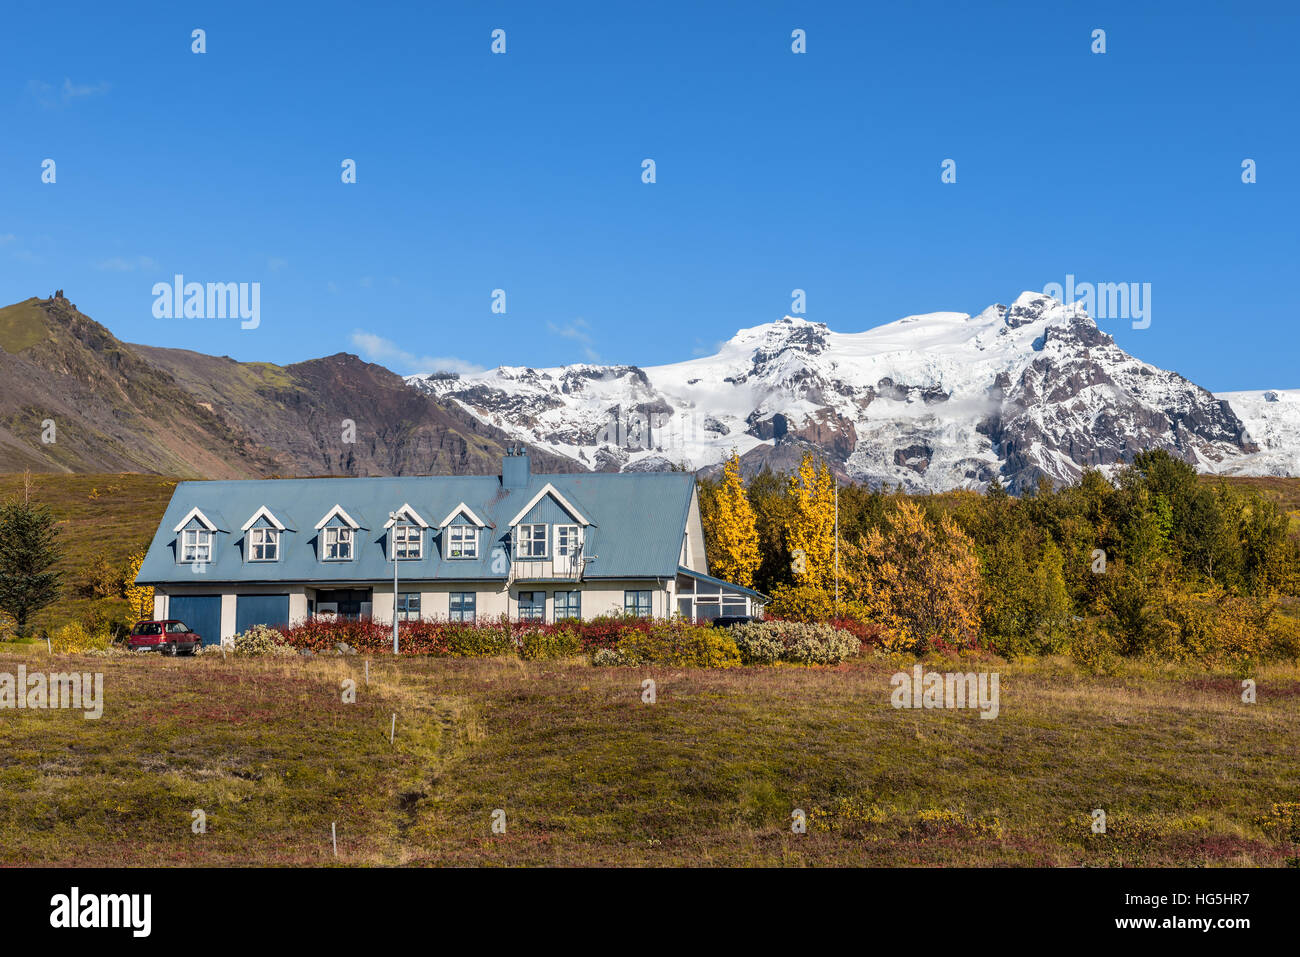 Paisaje con una casa de Islandia y montañas nevadas en el fondo. Foto de stock